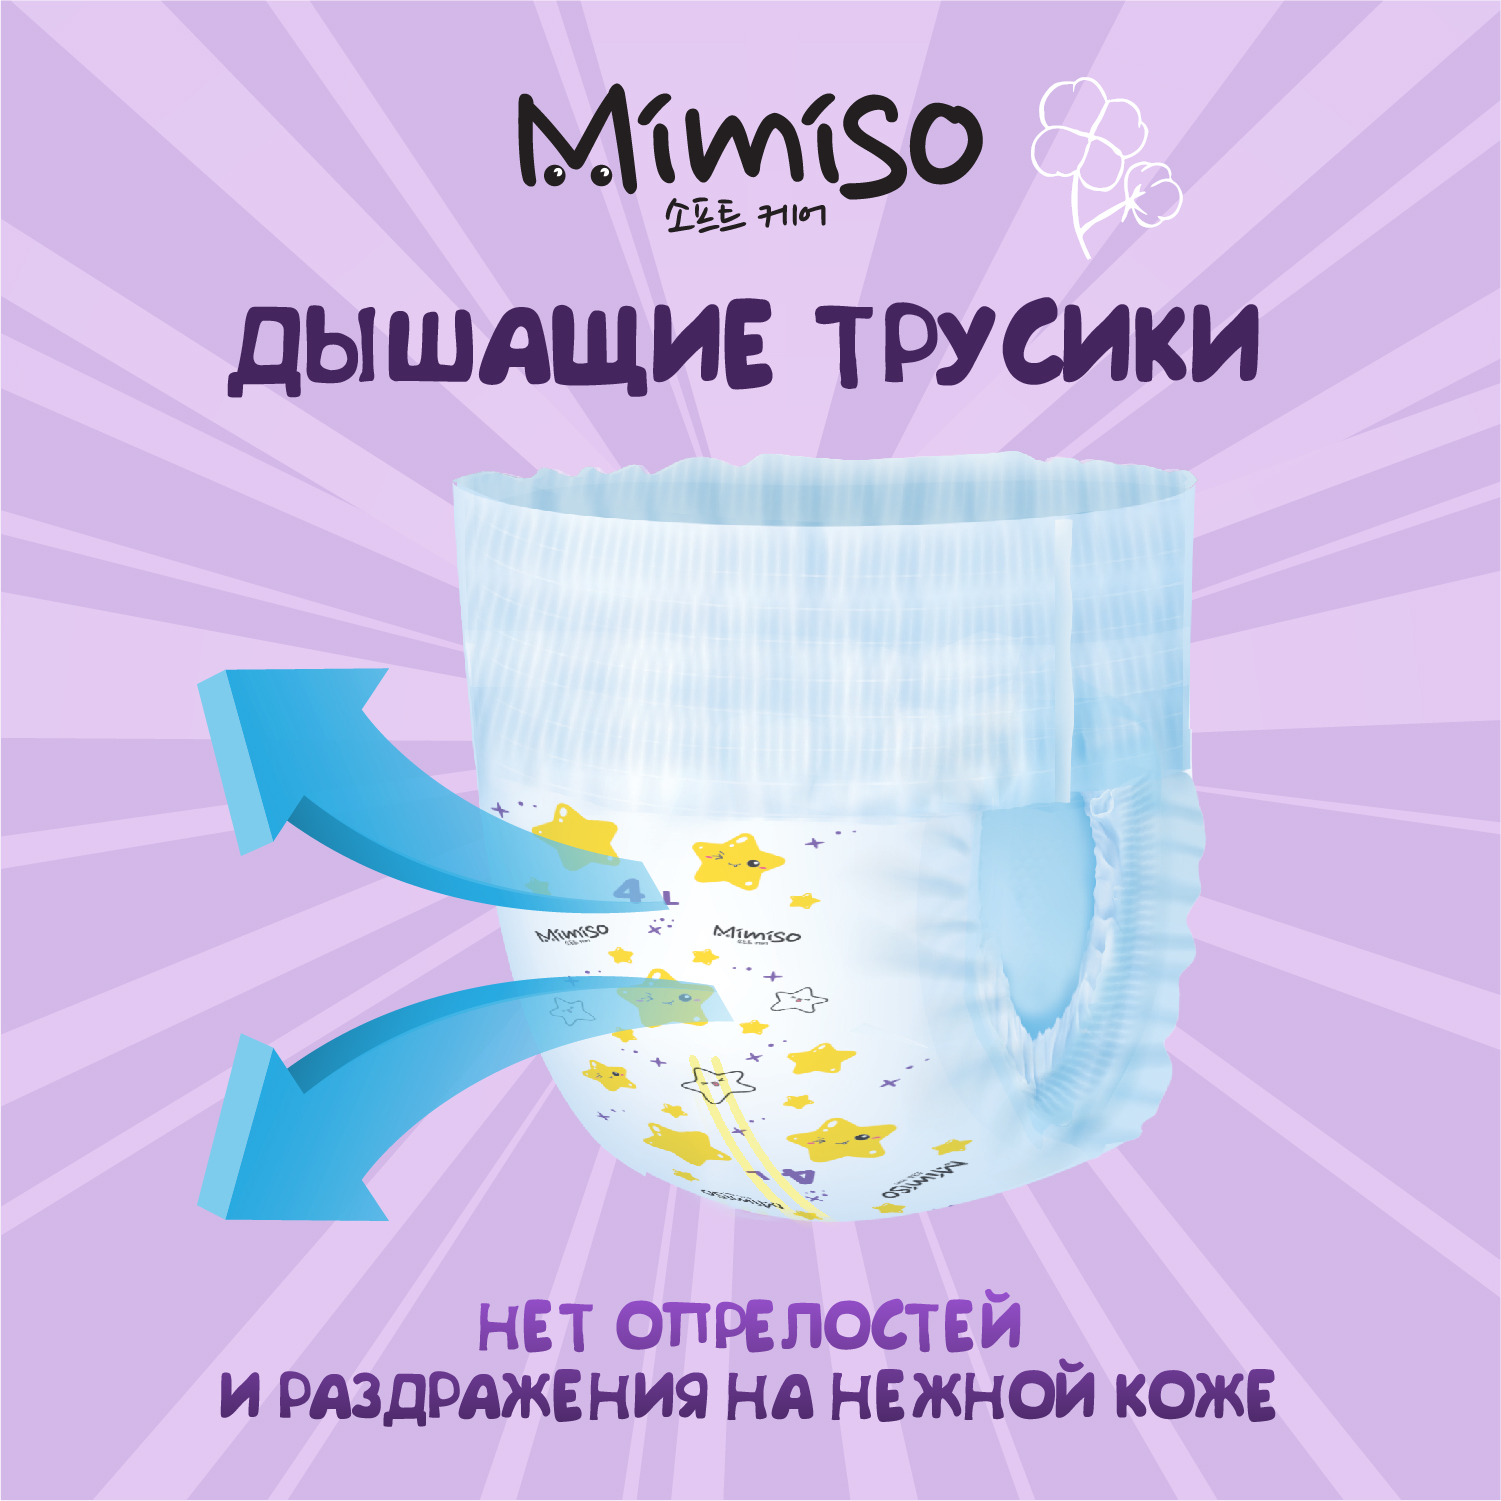 Трусики Mimiso одноразовые для детей 4/L 9-14 кг mega-pack 84шт - фото 2